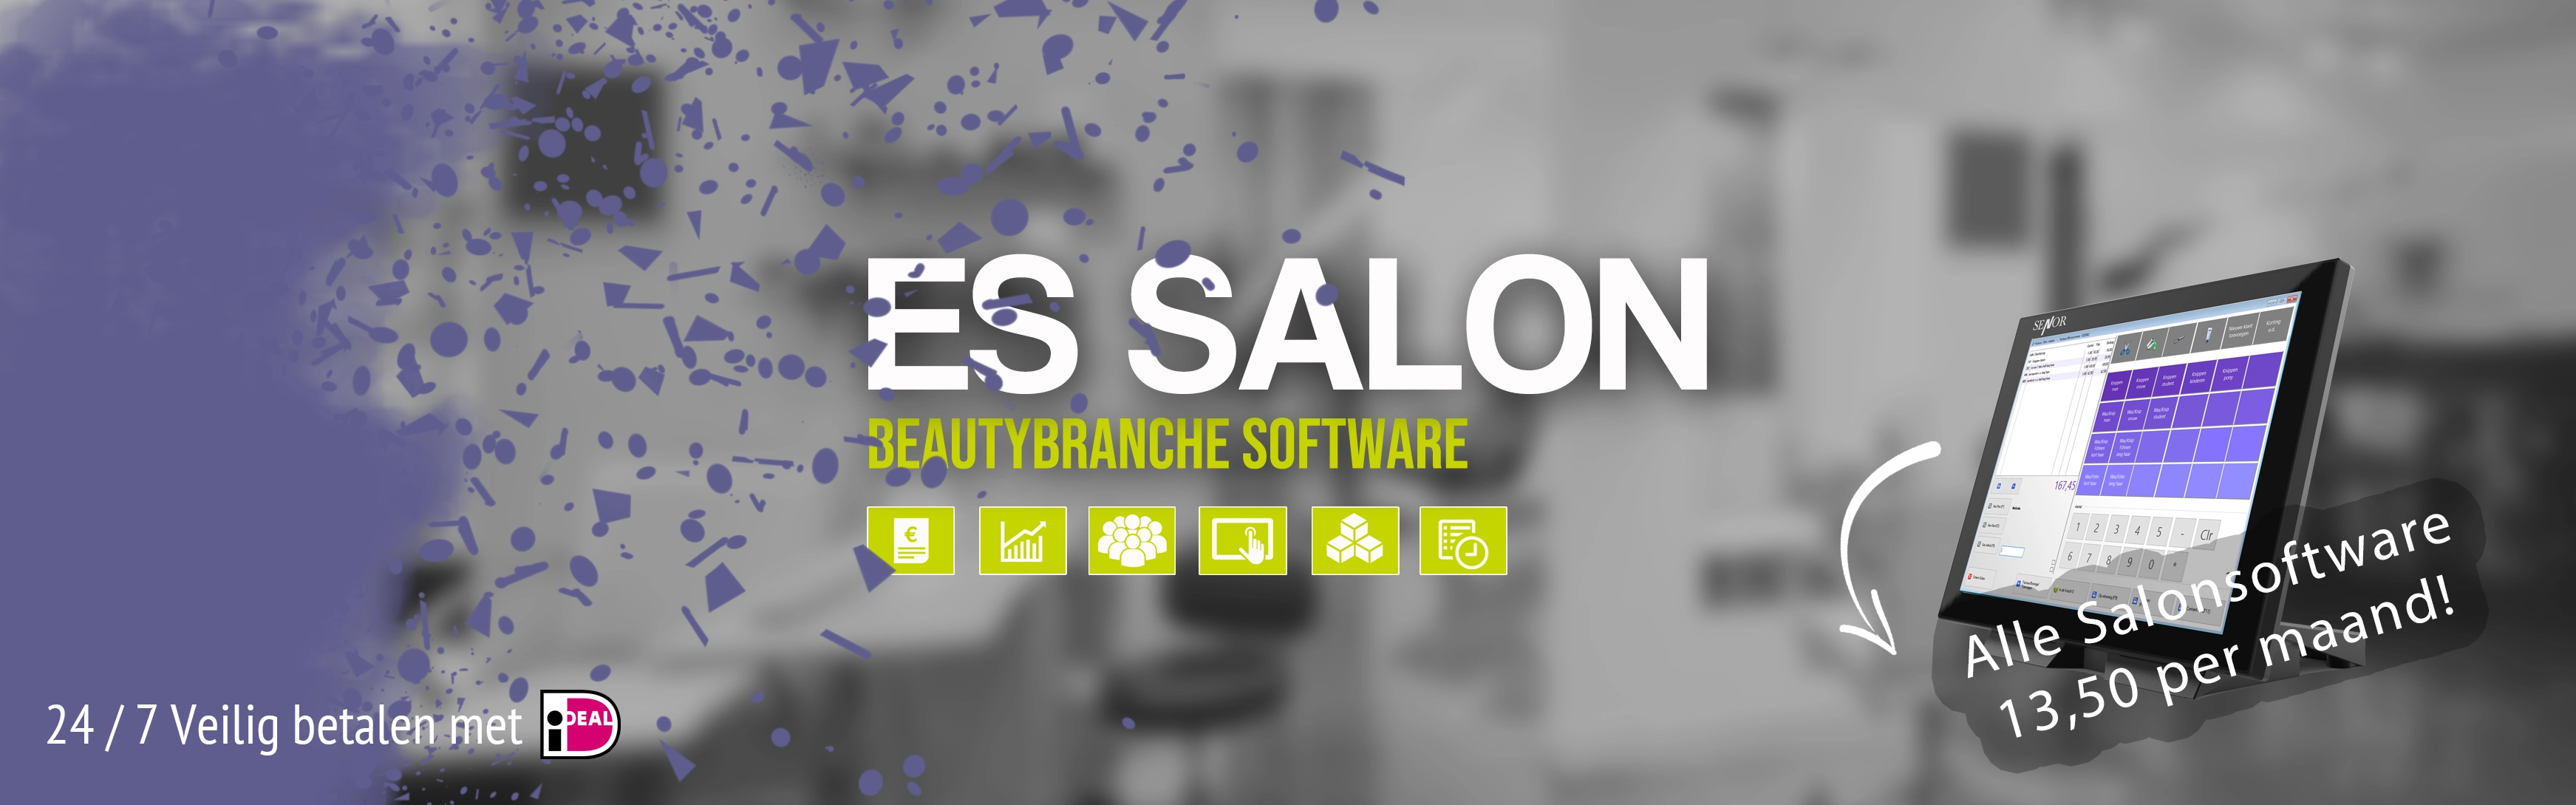 Salon software Essalon, kapper software, schoonheidssalon software, nagelsalon software